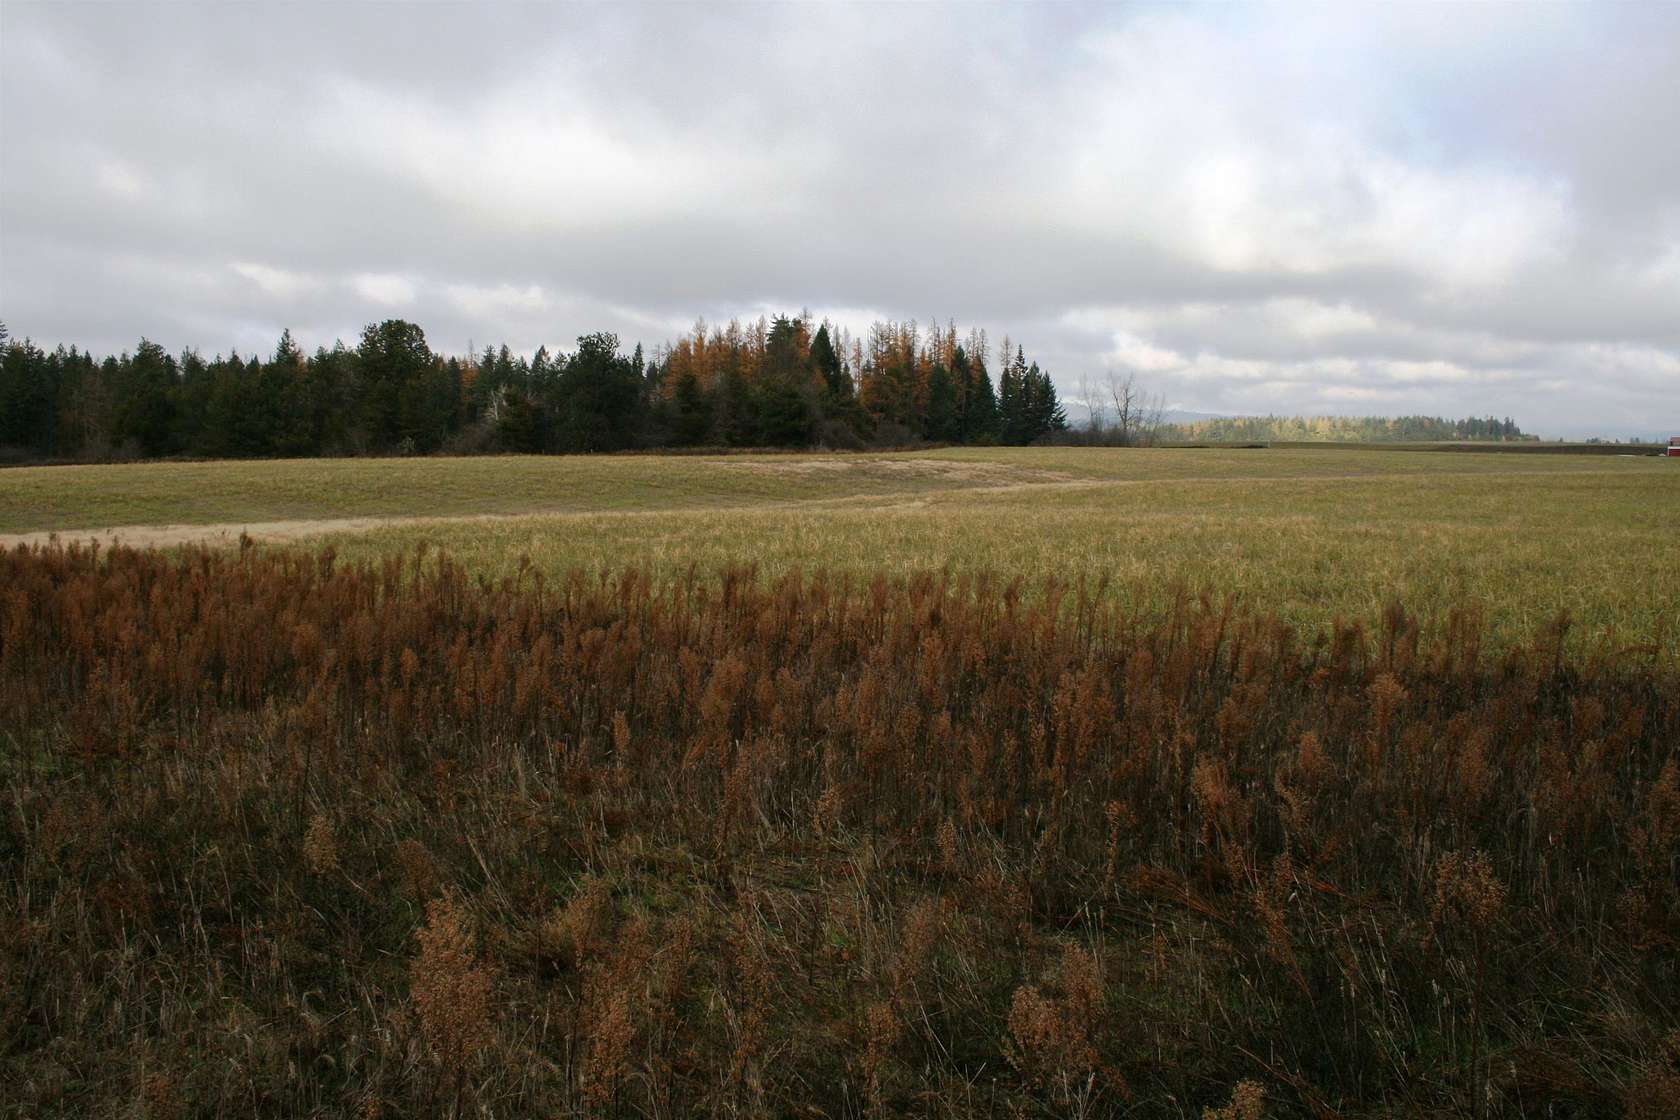 10 Acres of Land for Sale in Deer Park, Washington